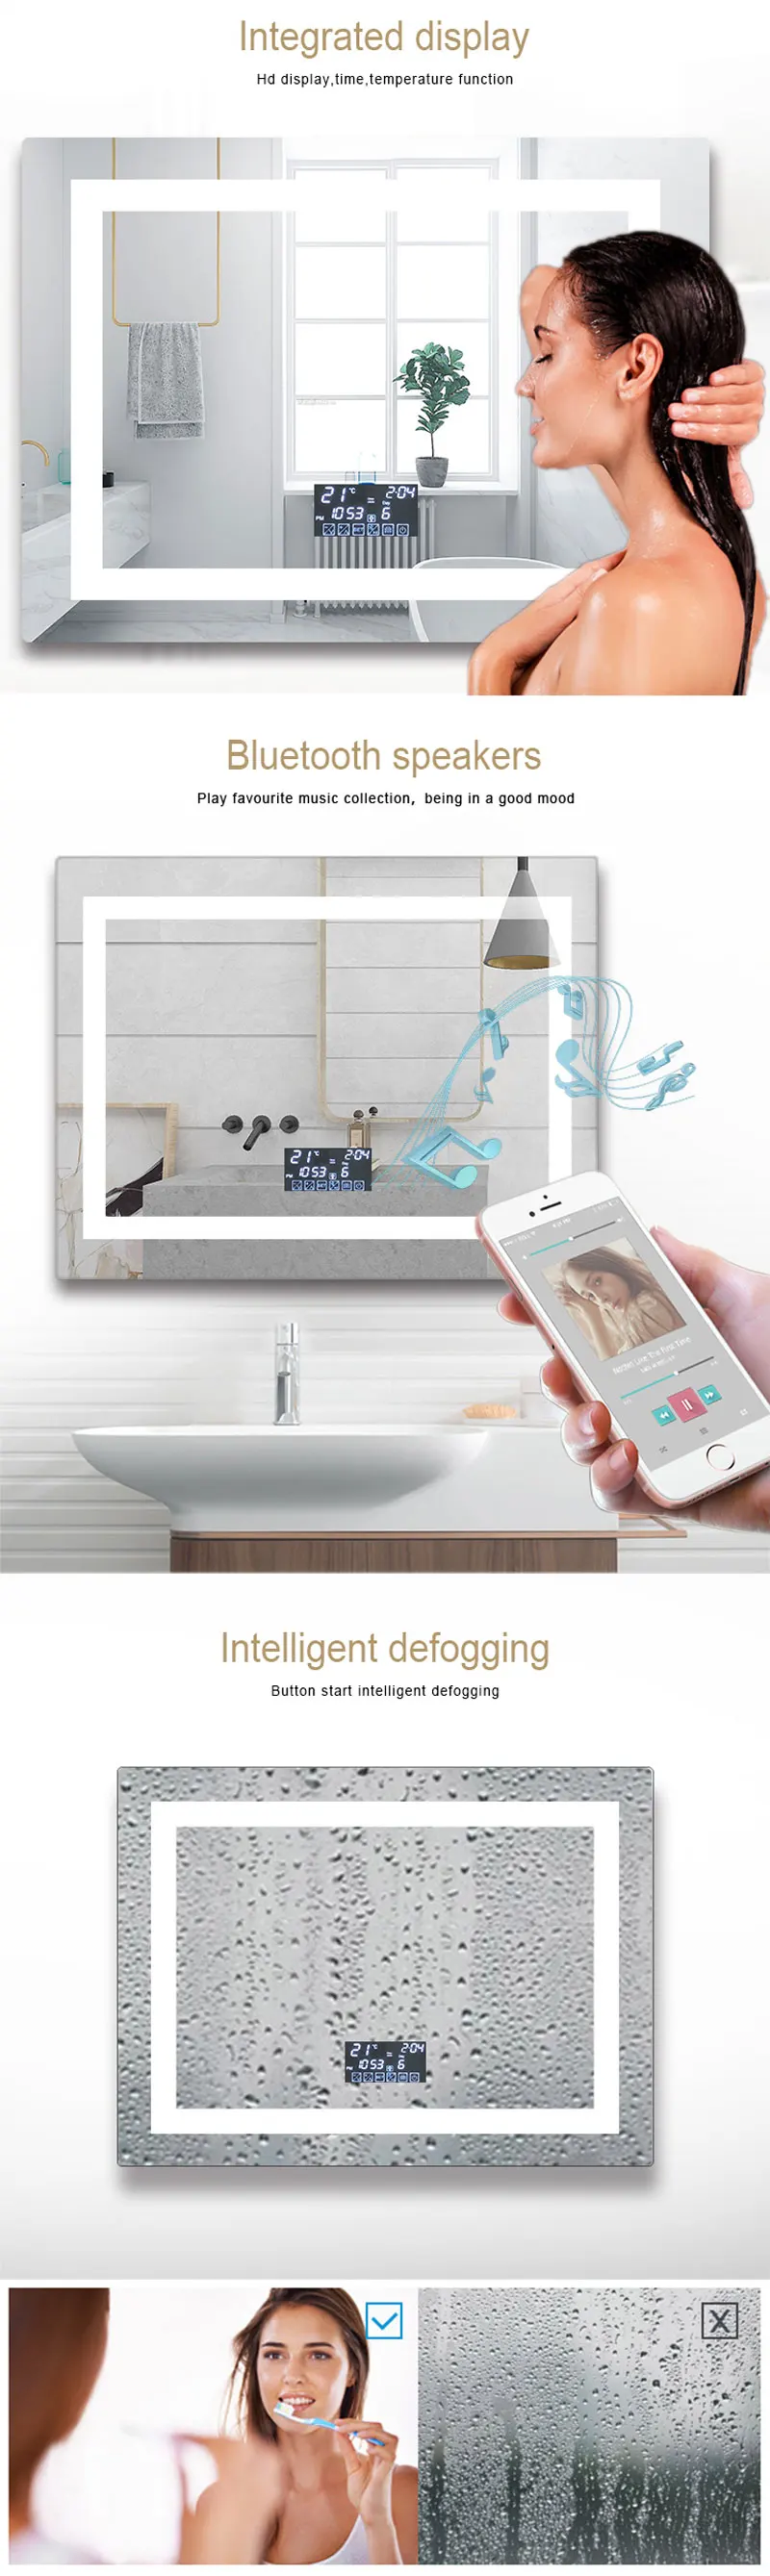 led-bathroom-smart-mirror.jpg